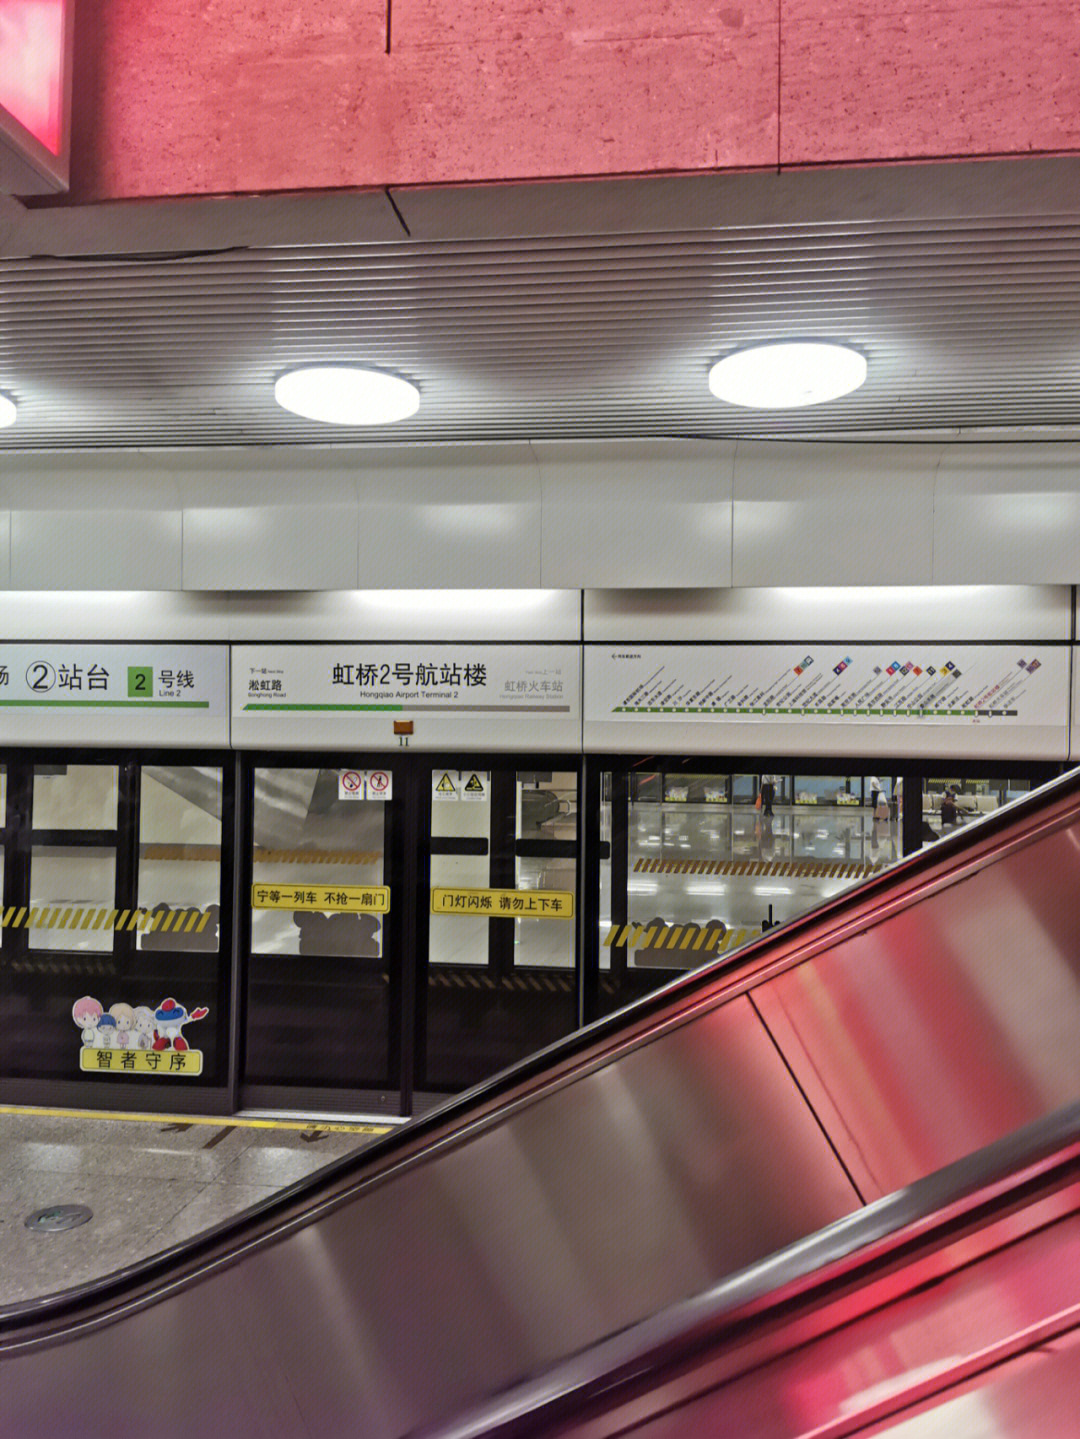 上海虹桥火车站2号线地铁快速到达通道